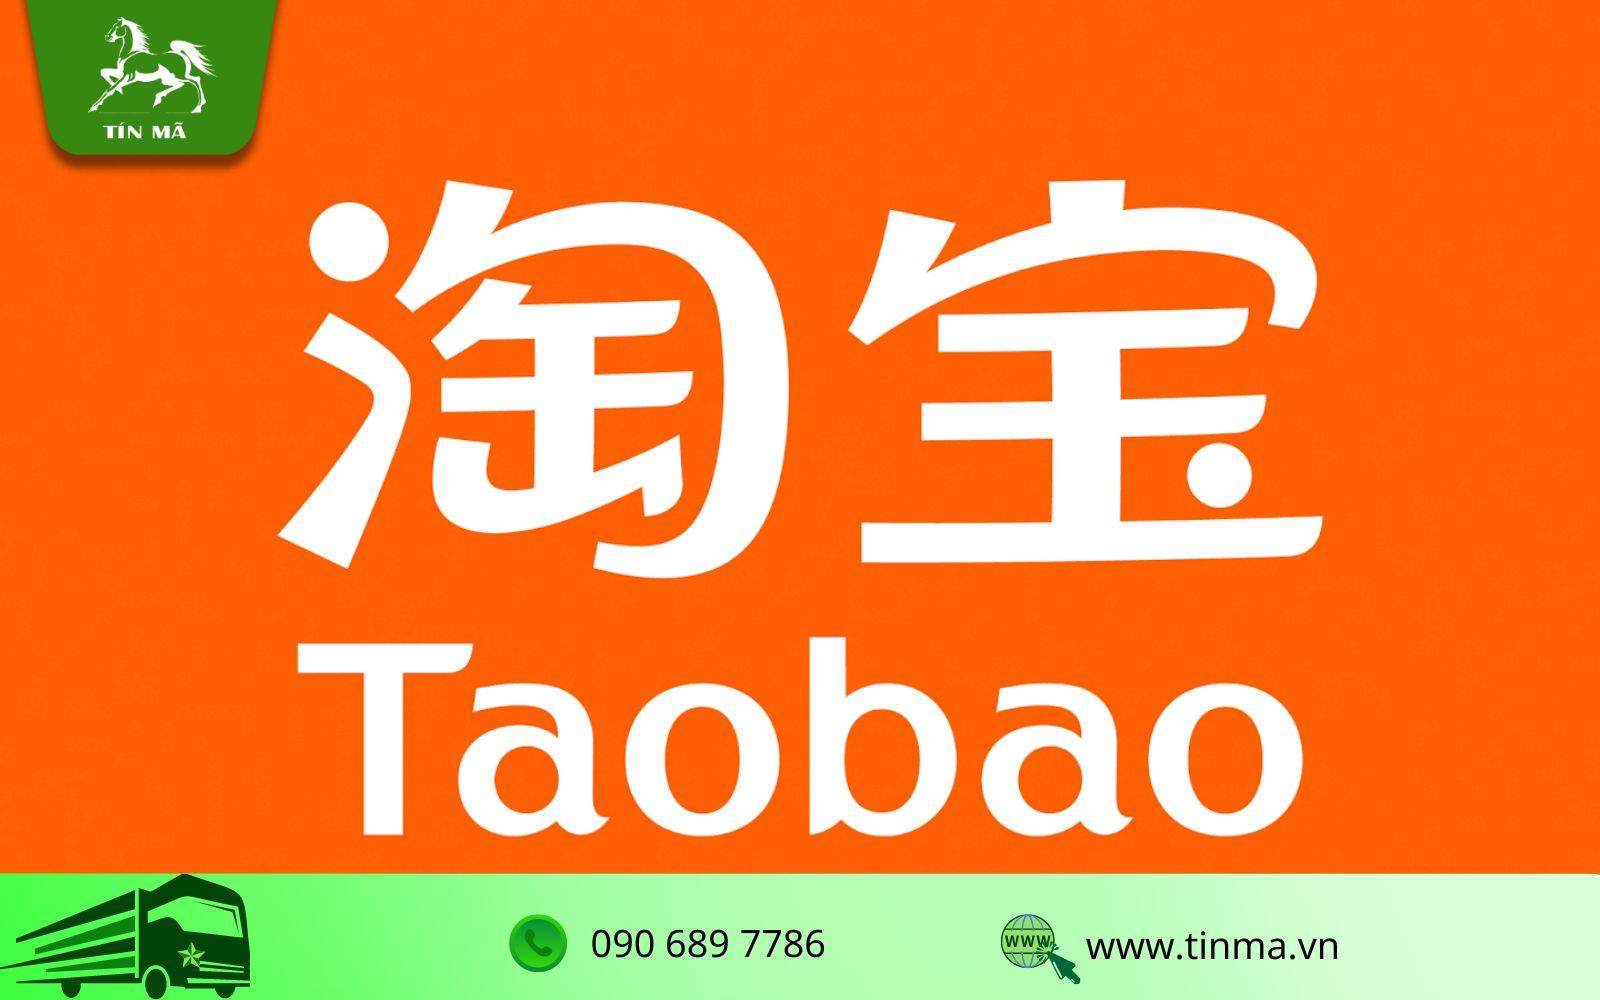 Trang web đặt hàng Taobao nổi tiếng với hình thức bán lẻ